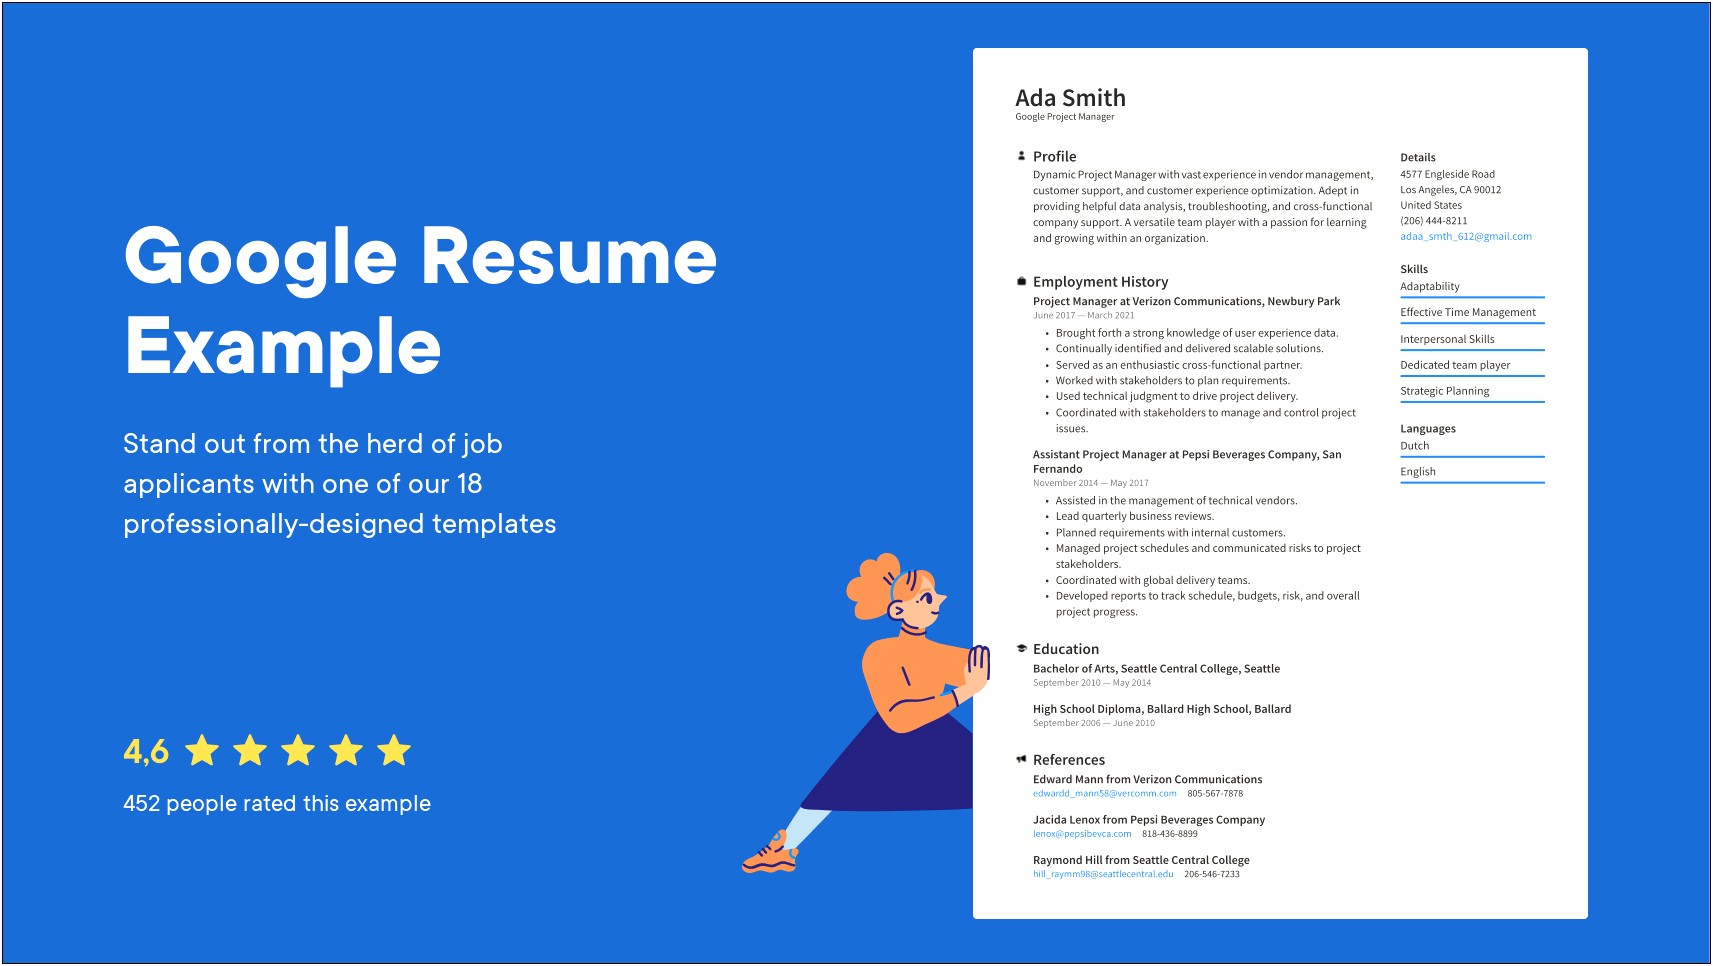 Resume Sample For Google Job